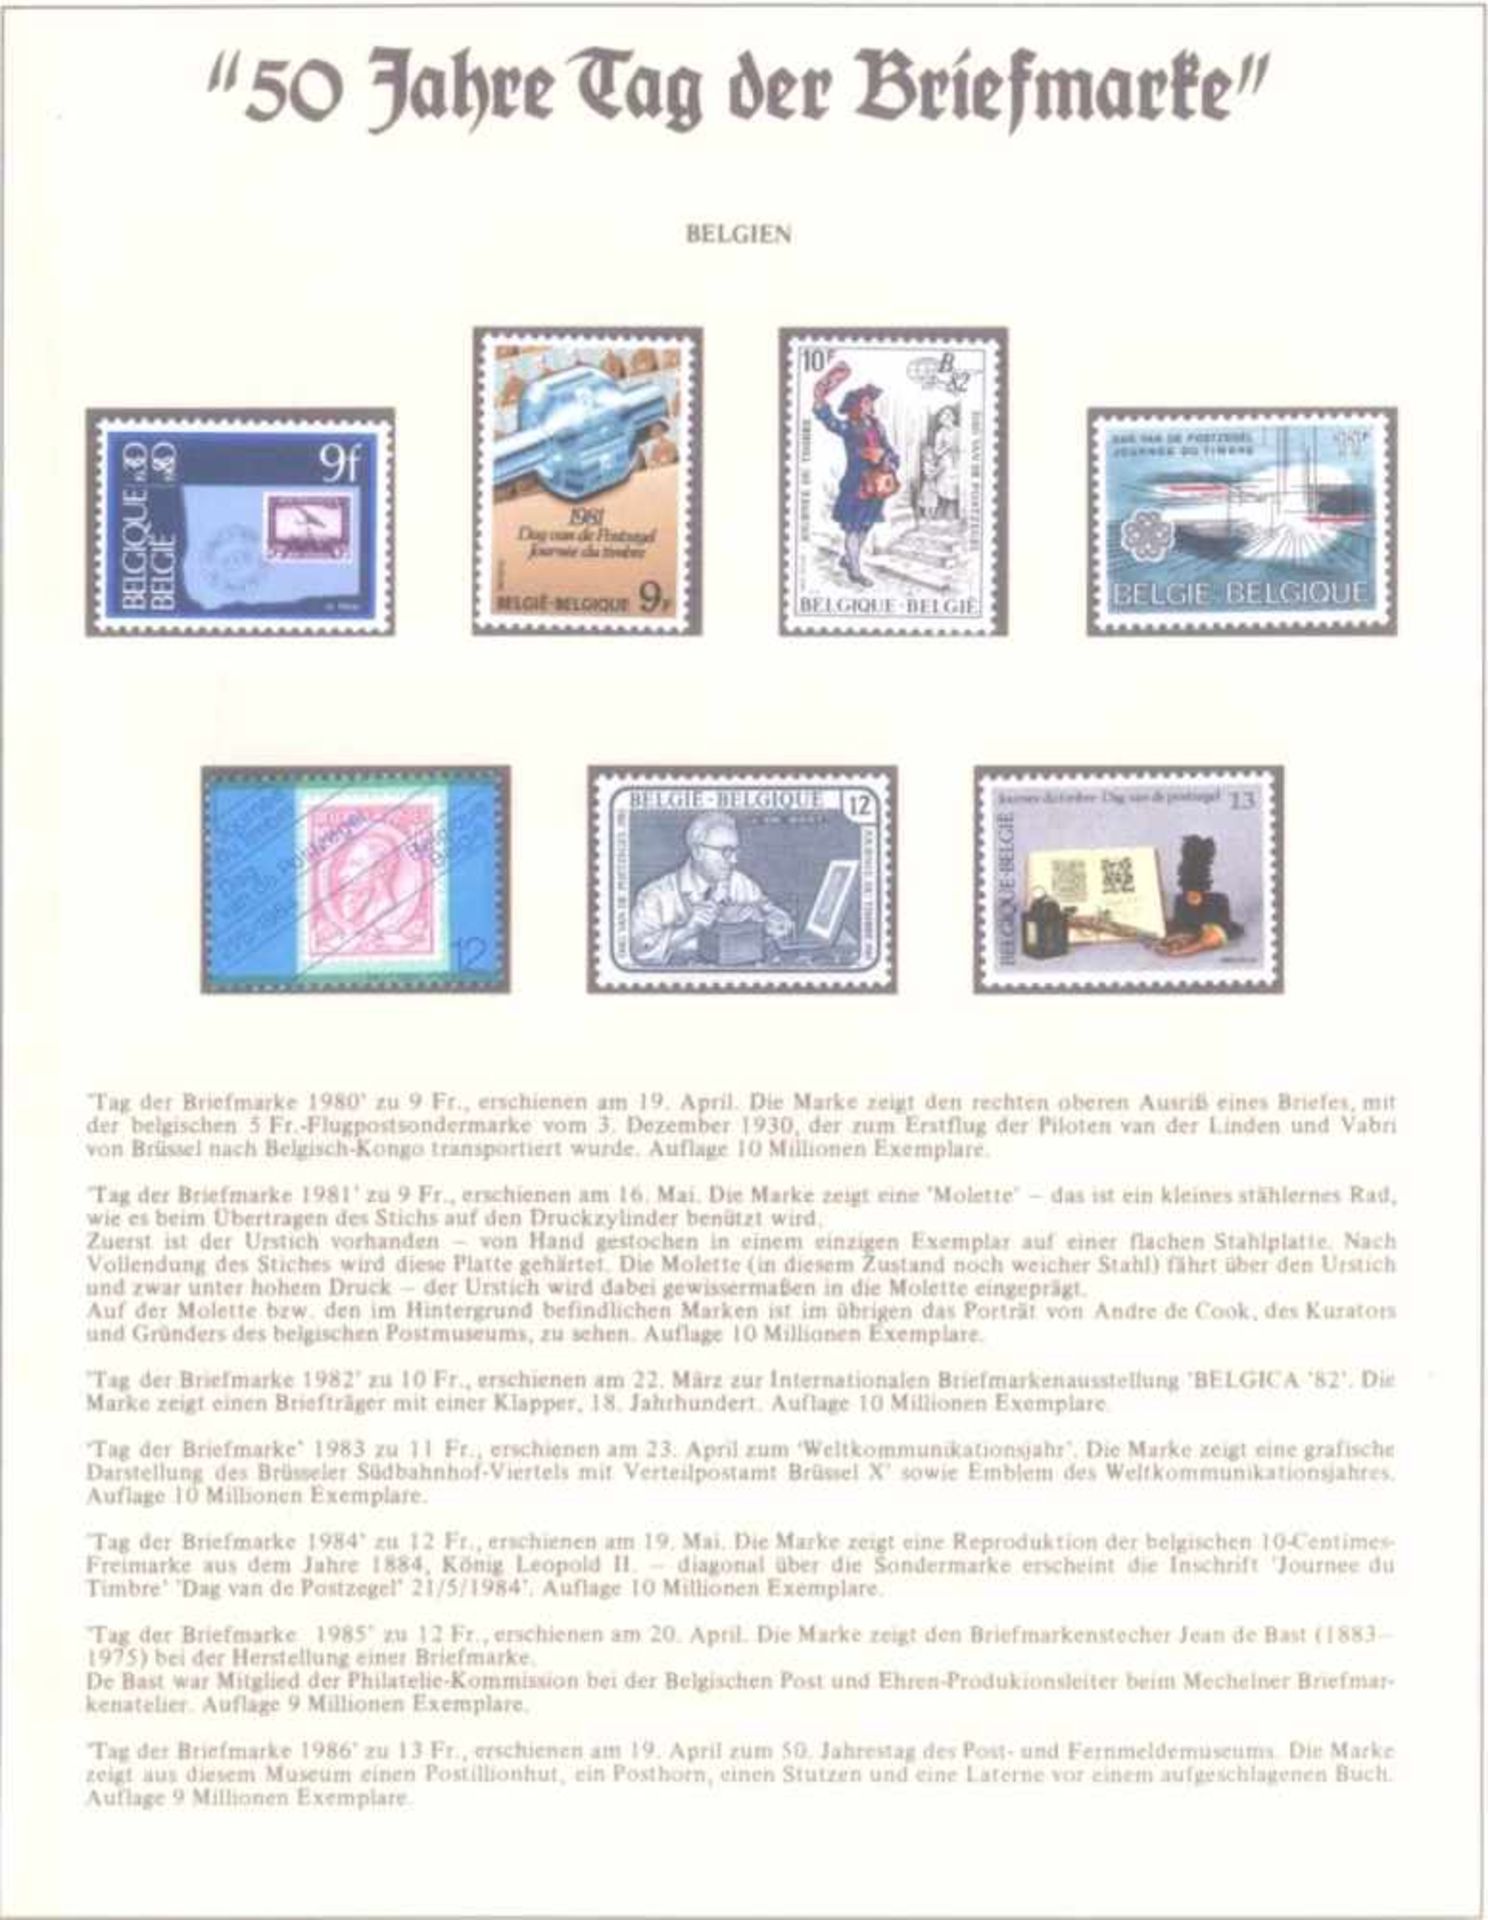 50 Jahre Tag der Briefmarke, Motivsammlungin 3 Alben. Sätze, Bögen, Ersttagsbrief usw. - Bild 2 aus 6